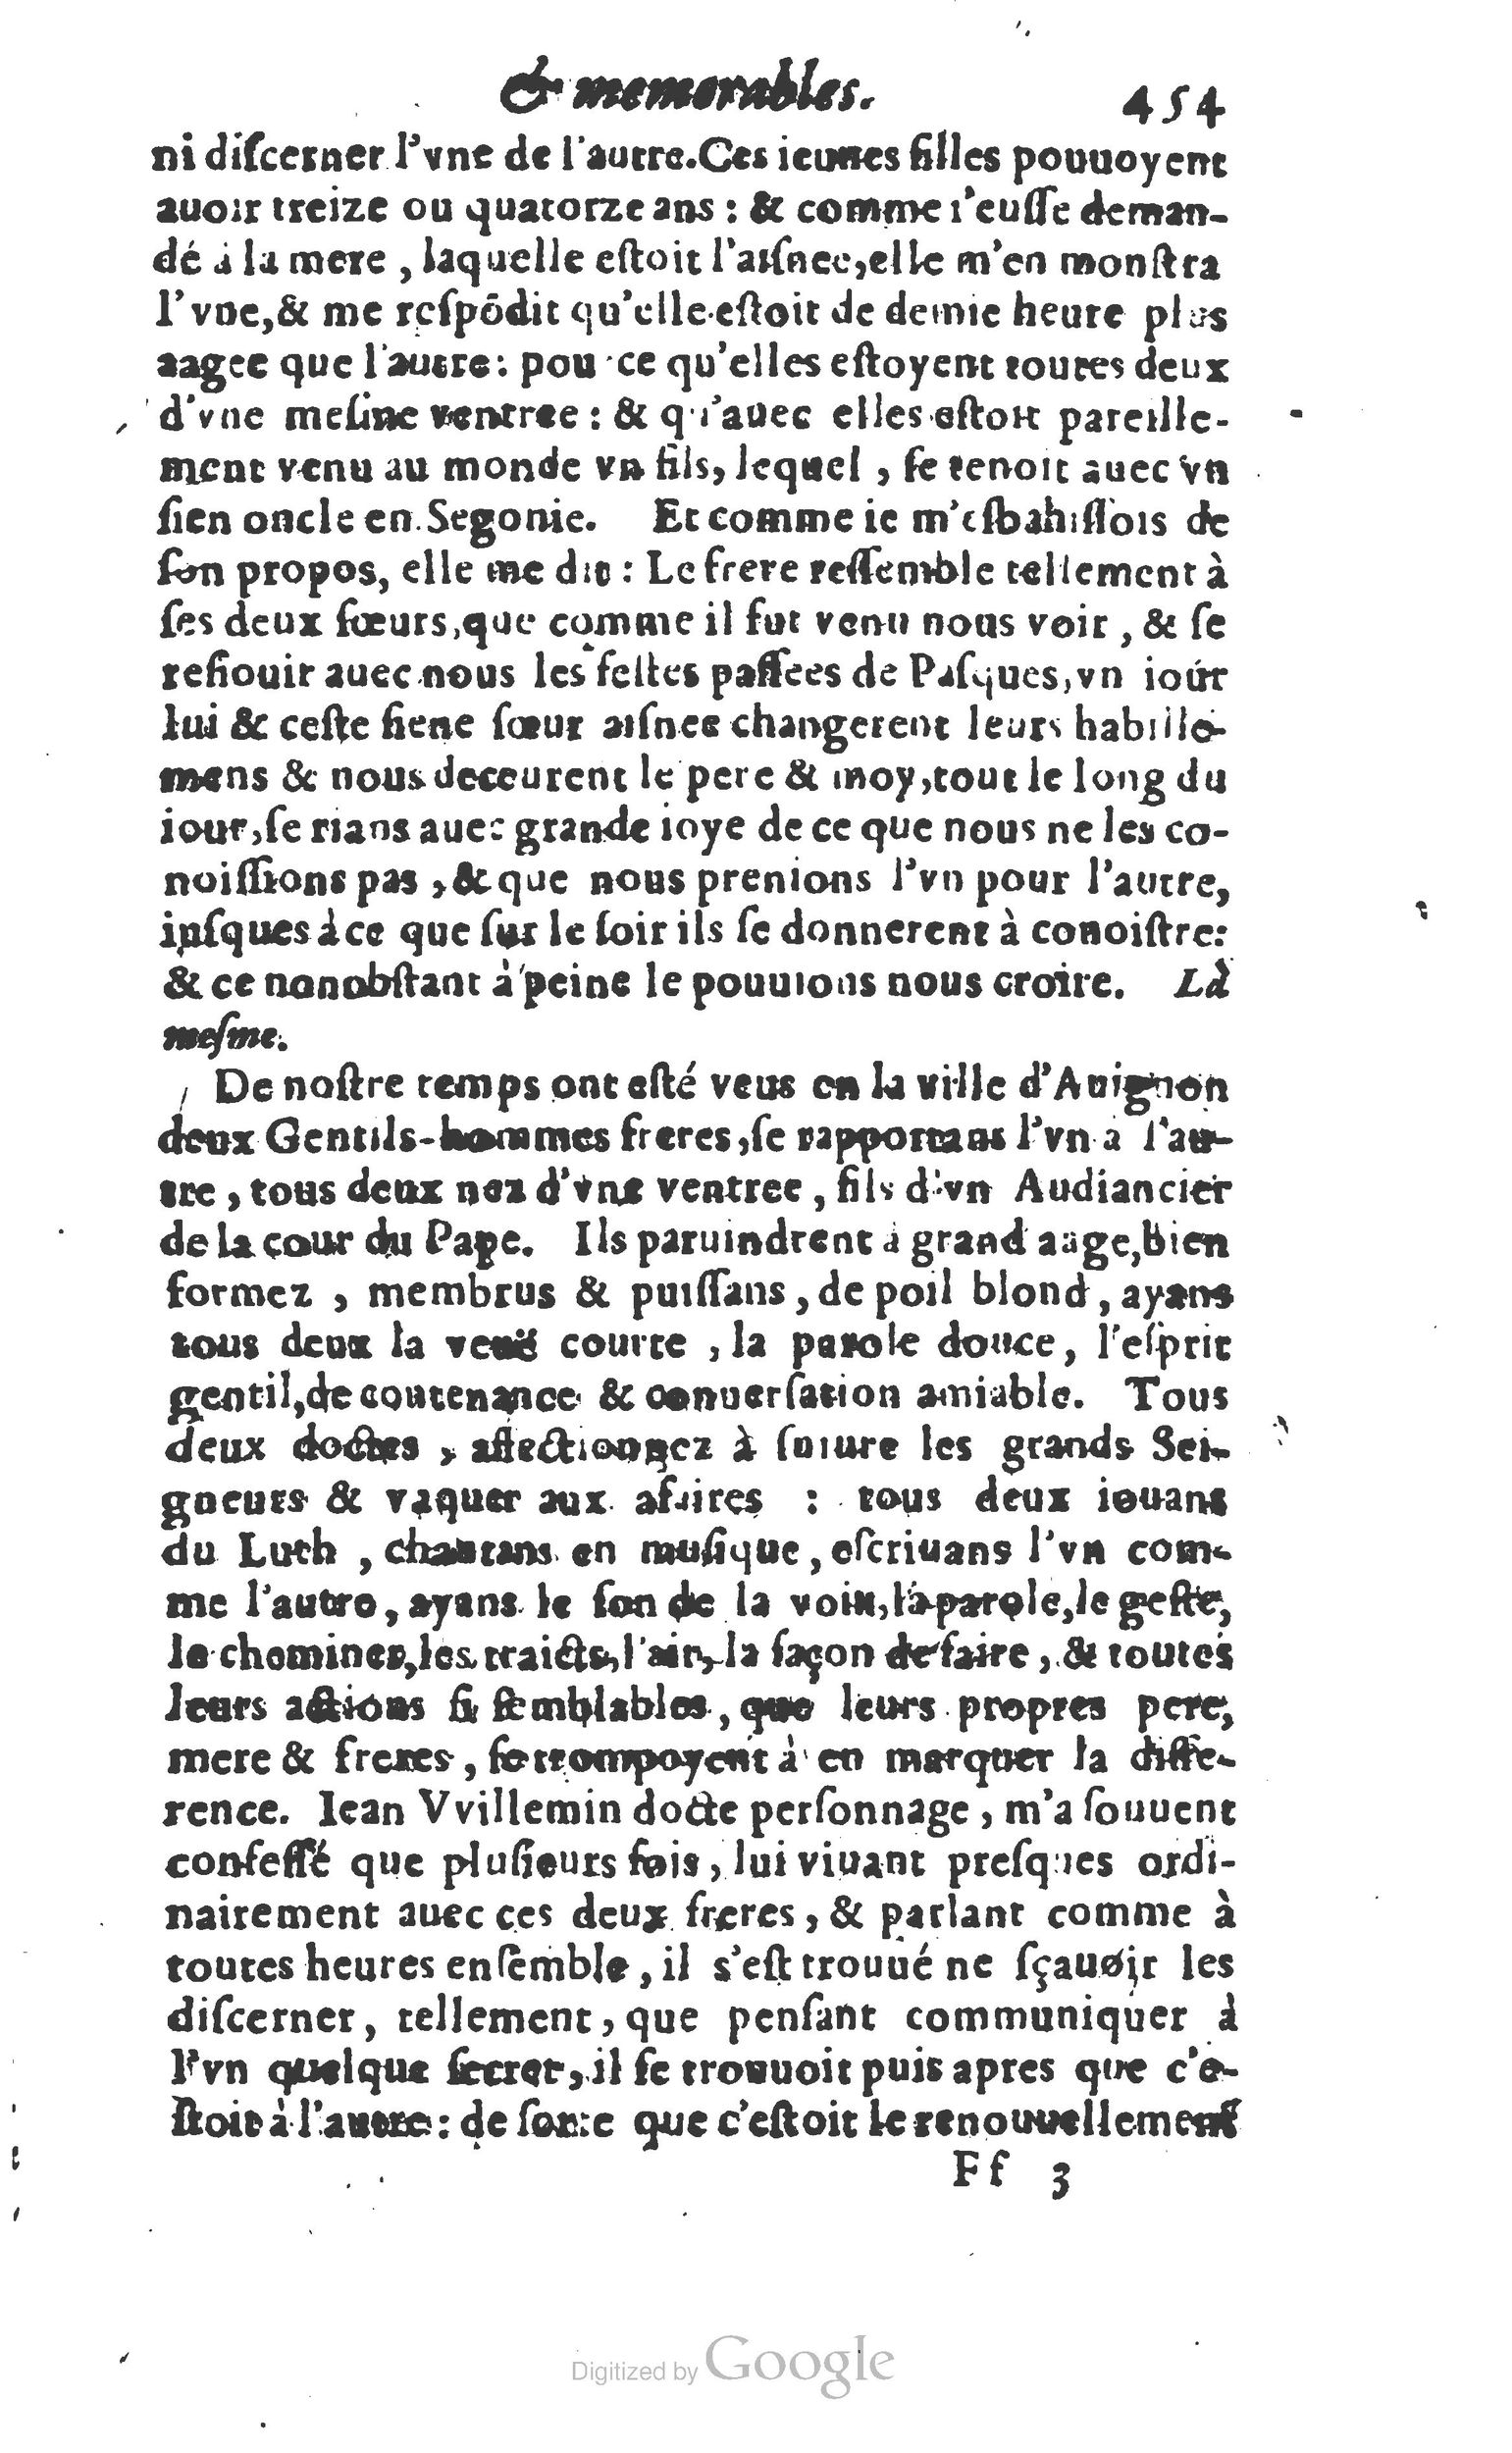 1610 Trésor d’histoires admirables et mémorables de nostre temps Marceau Princeton_Page_0474.jpg